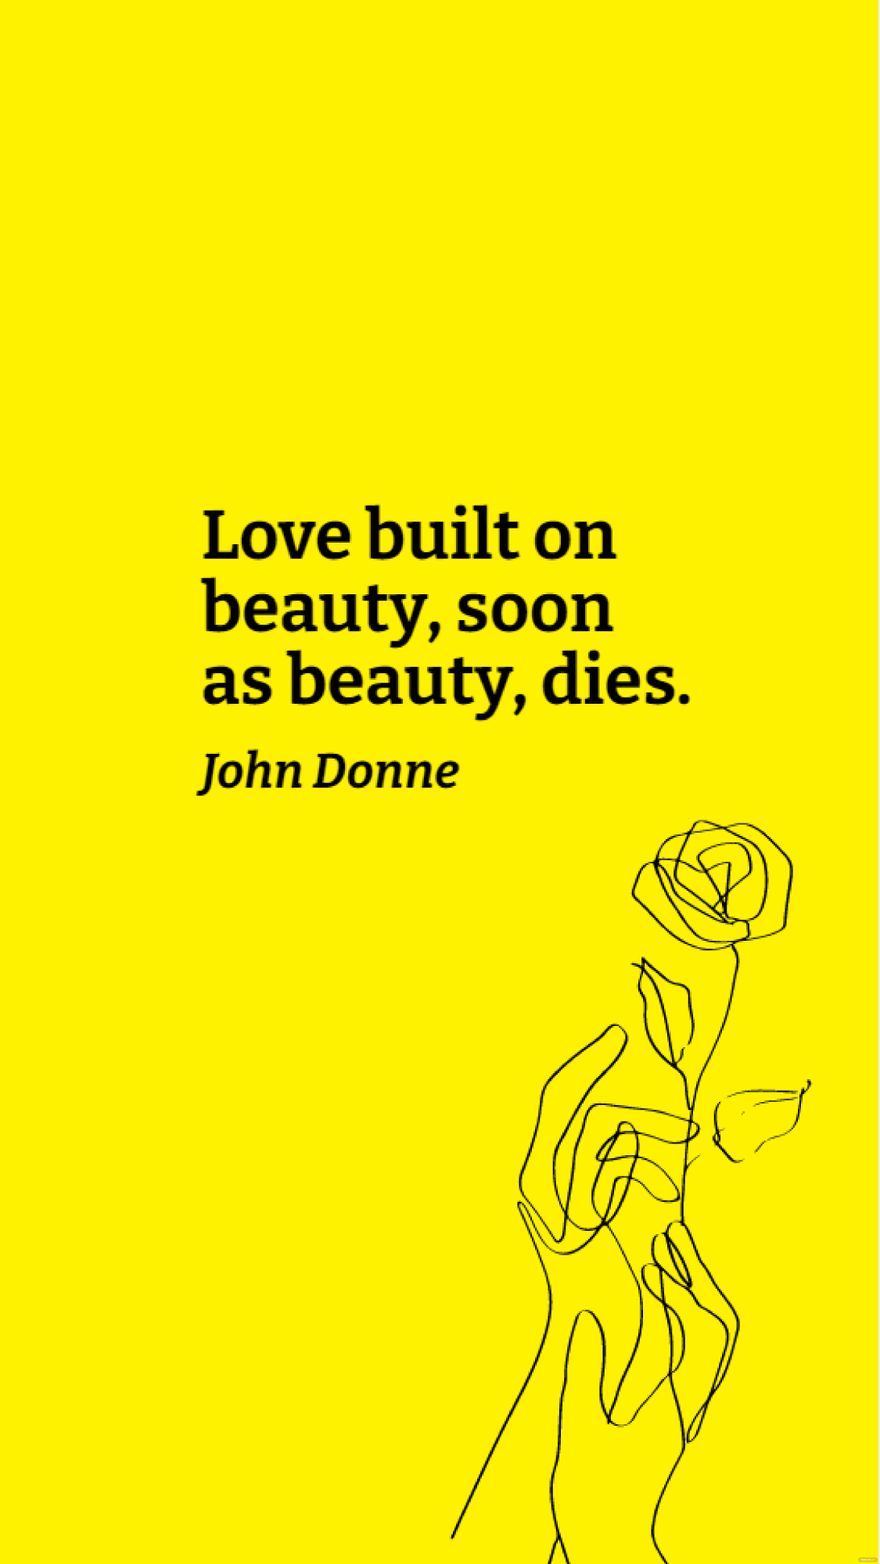 Free John Donne - Love built on beauty, soon as beauty, dies. in JPG